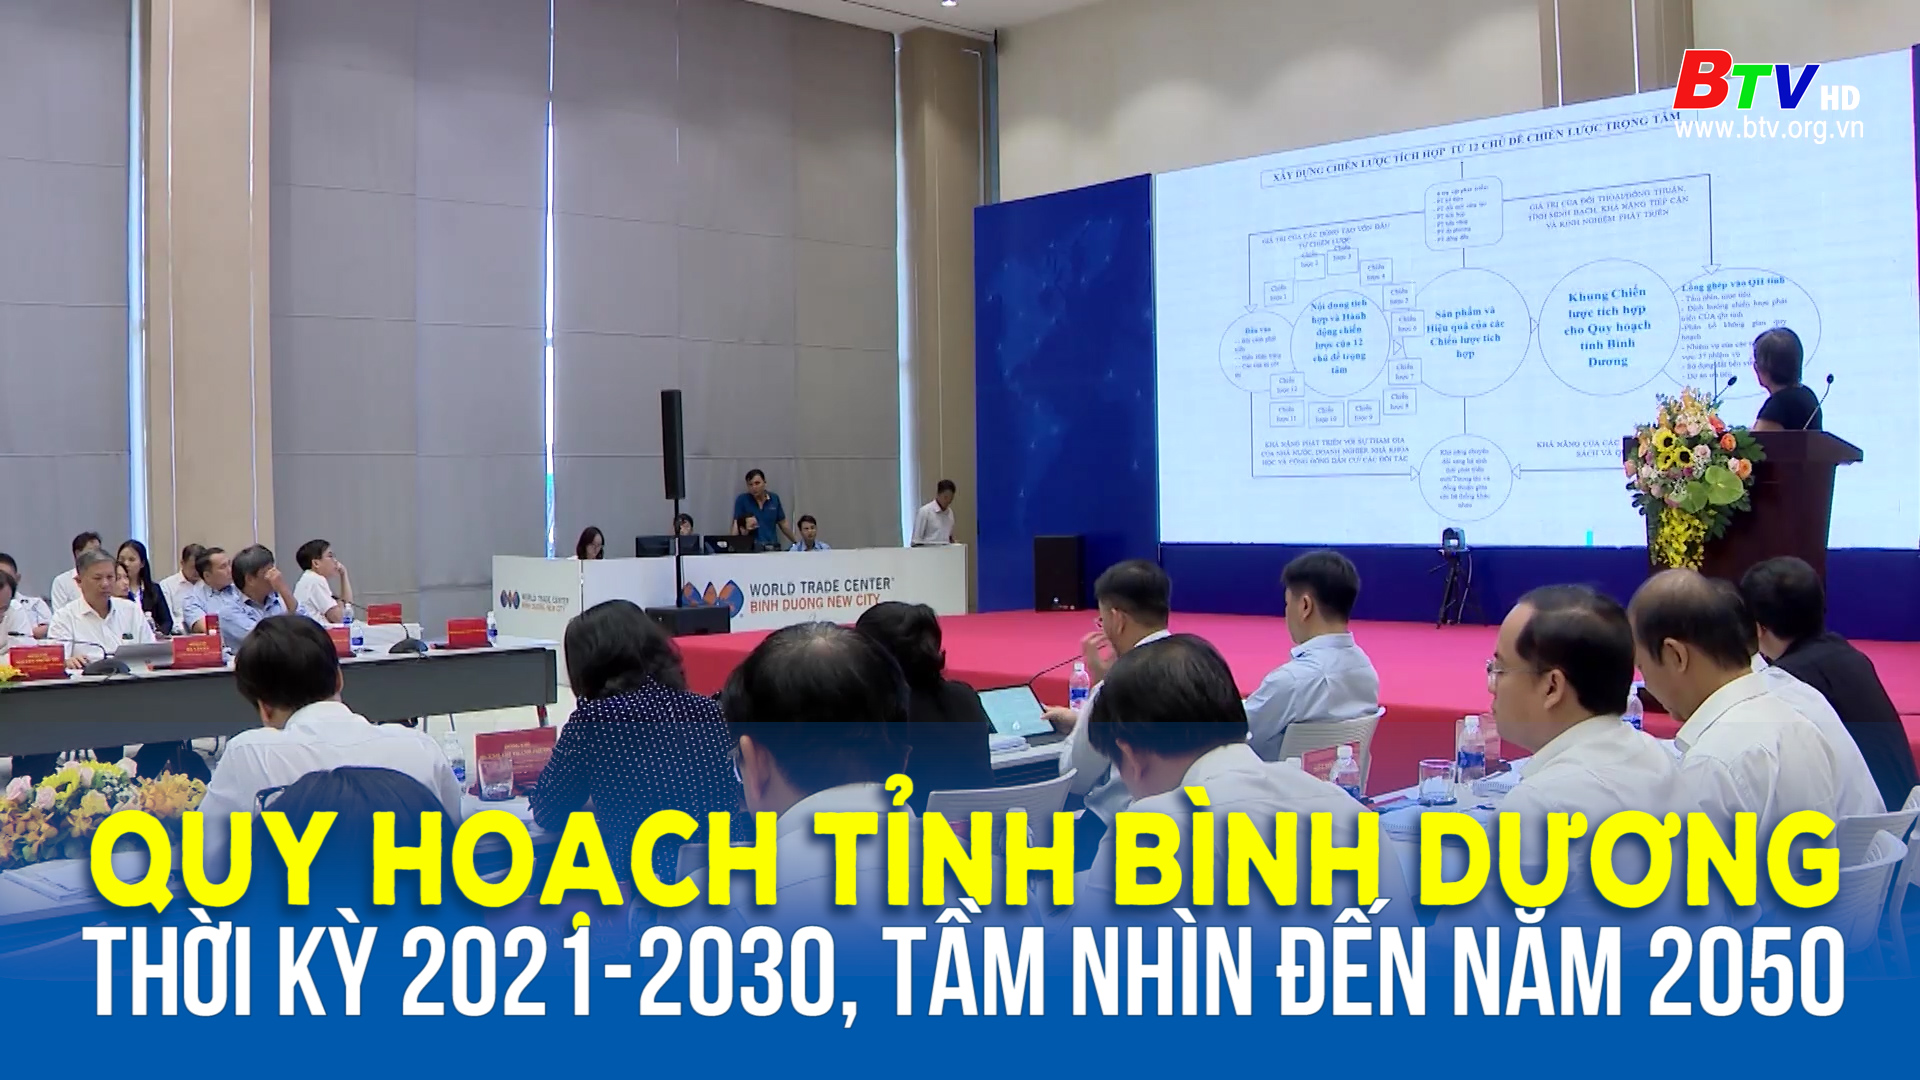 Hội thảo đầu kỳ Quy hoạch tỉnh Bình Dương thời kỳ 2021-2030, tầm nhìn đến năm 2050	